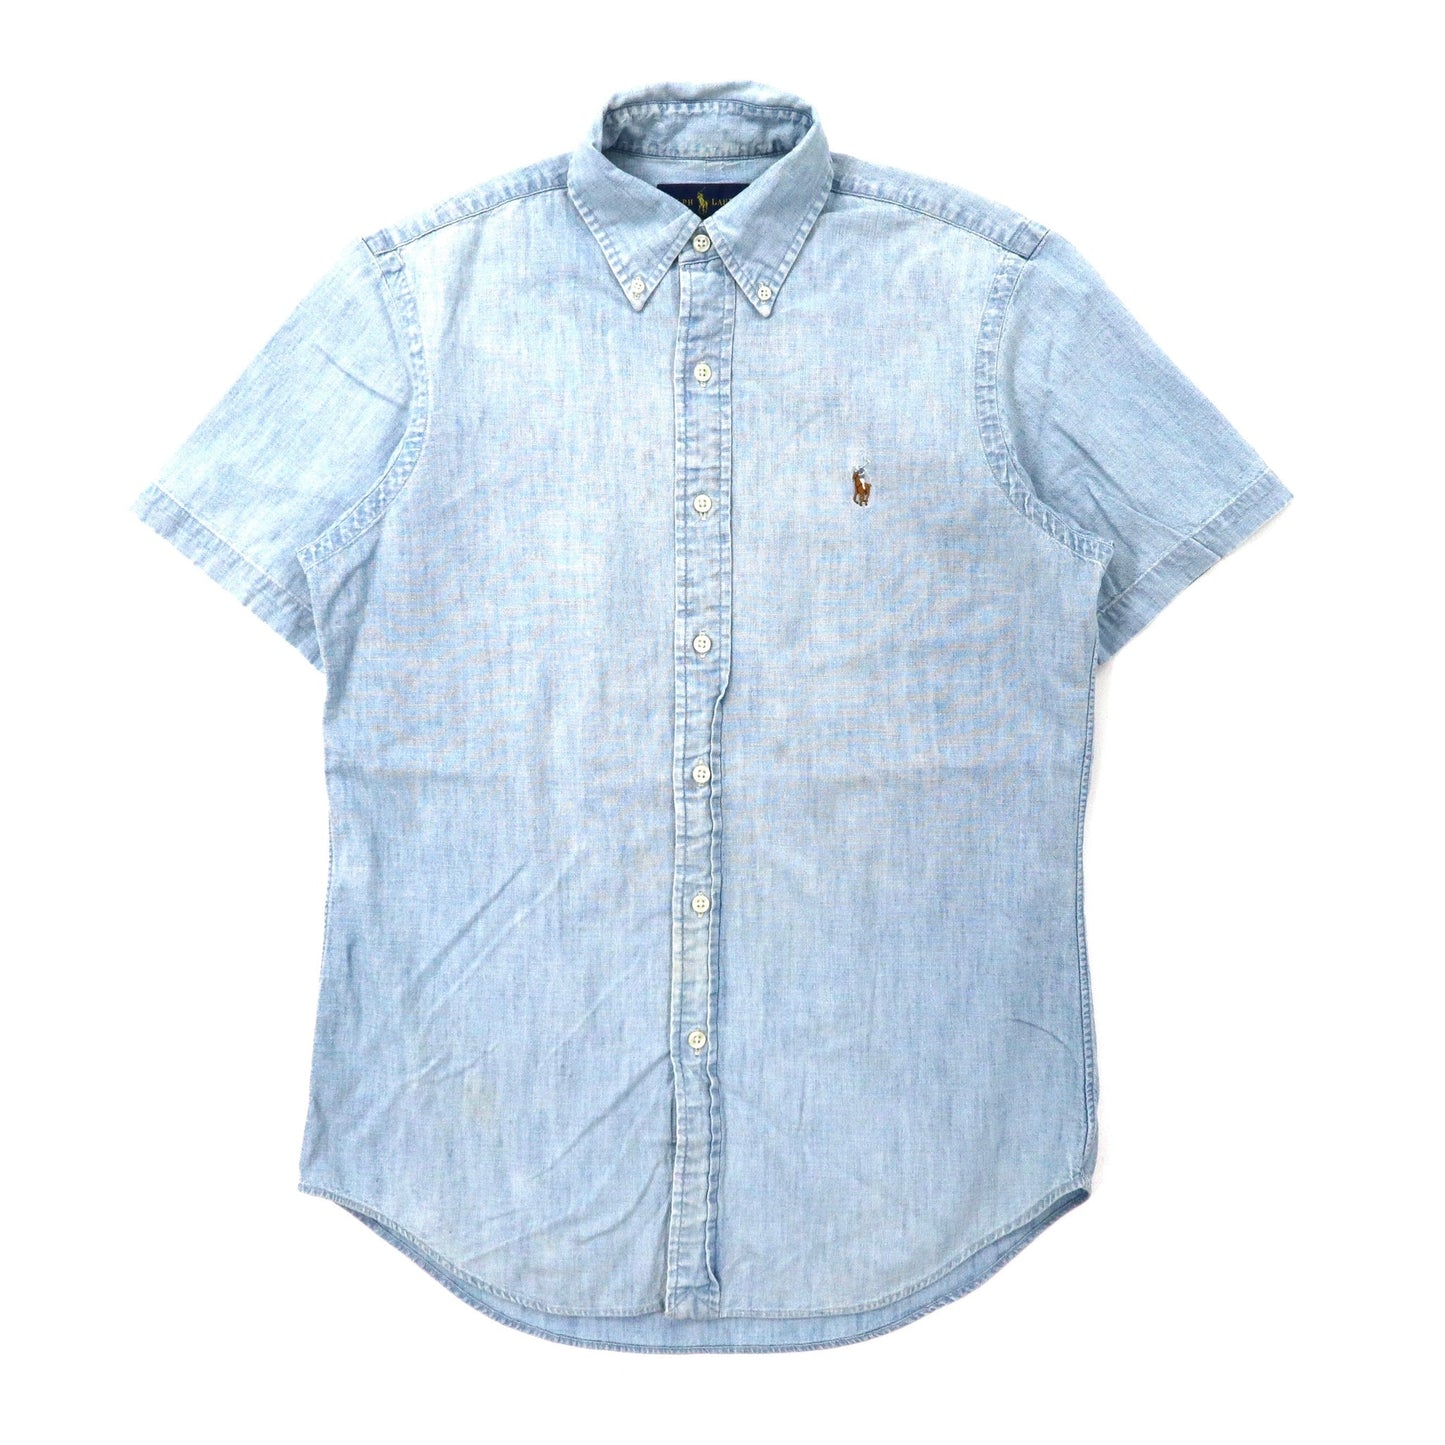 RALPH LAUREN 半袖ボタンダウンシャツ S ブルー コットン スモールポニー刺繍-Ralph Lauren-古着